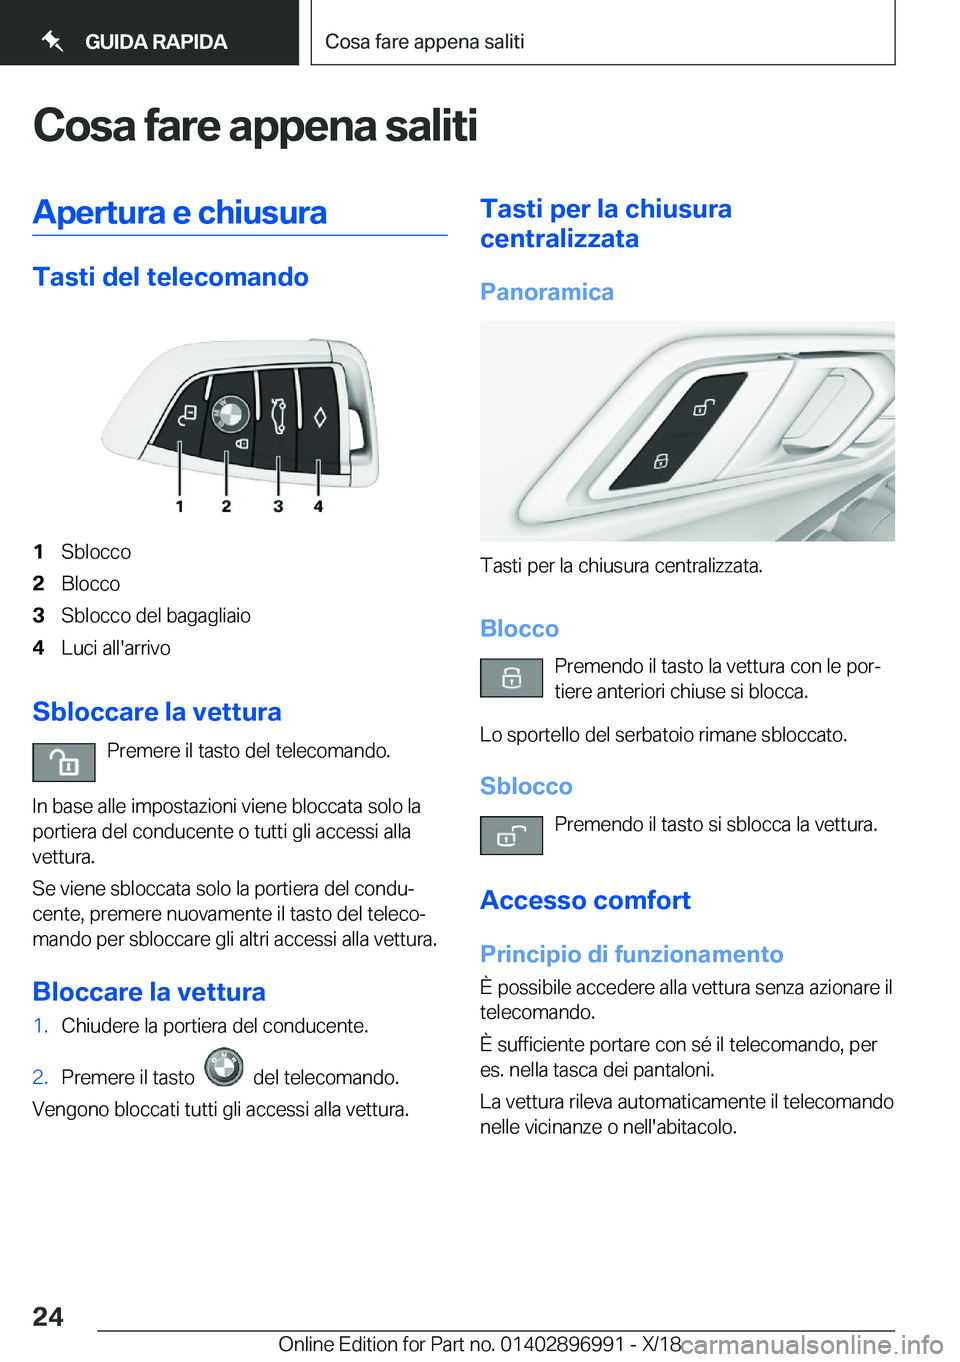 BMW Z4 2019  Libretti Di Uso E manutenzione (in Italian) �C�o�s�a��f�a�r�e��a�p�p�e�n�a��s�a�l�i�t�i�A�p�e�r�t�u�r�a��e��c�h�i�u�s�u�r�a
�T�a�s�t�i��d�e�l��t�e�l�e�c�o�m�a�n�d�o
�1�S�b�l�o�c�c�o�2�B�l�o�c�c�o�3�S�b�l�o�c�c�o��d�e�l��b�a�g�a�g�l�i�a